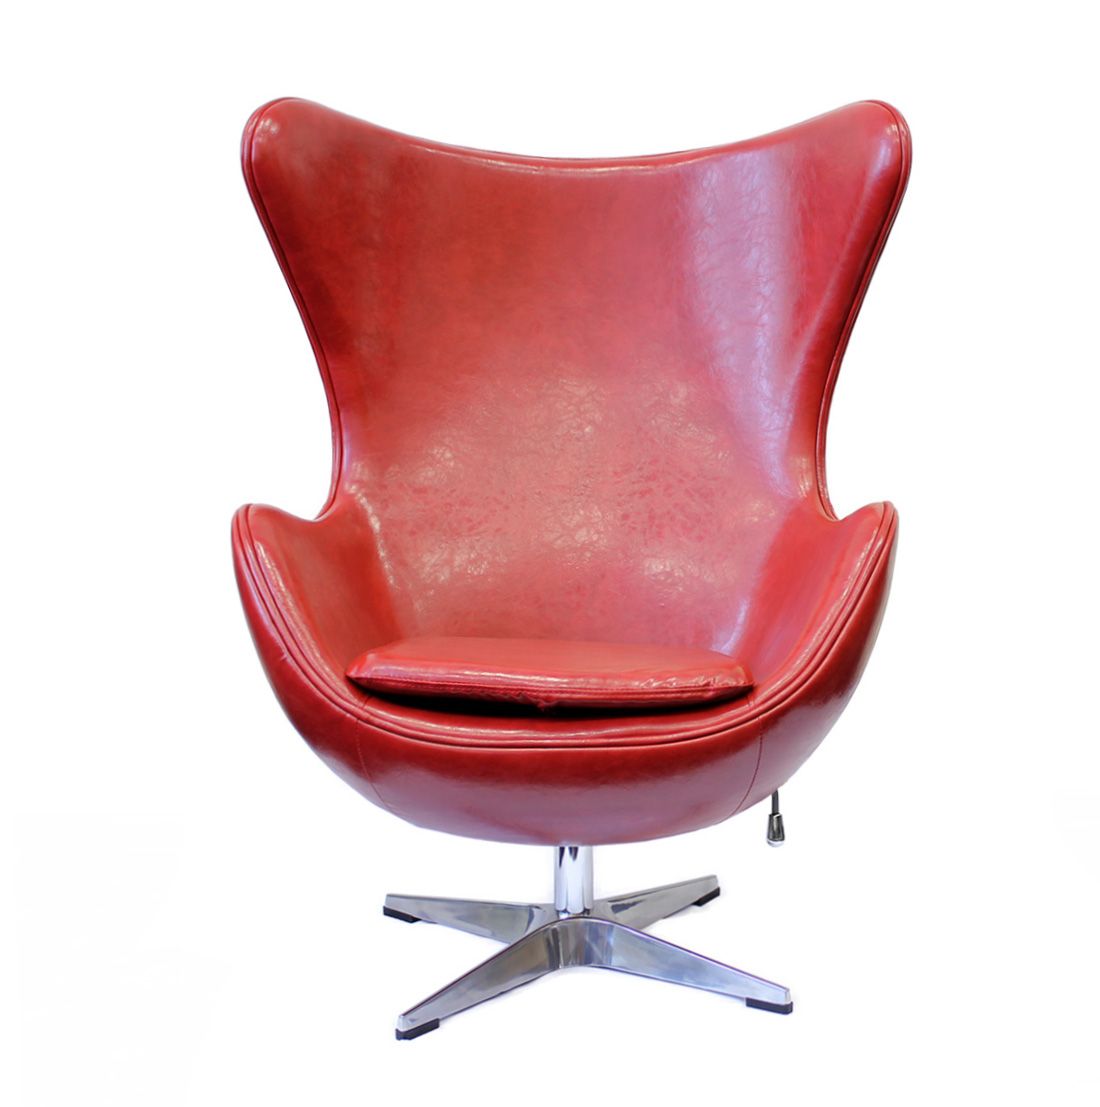 Стул Bradex Home Egg Chair FR 0003 Red